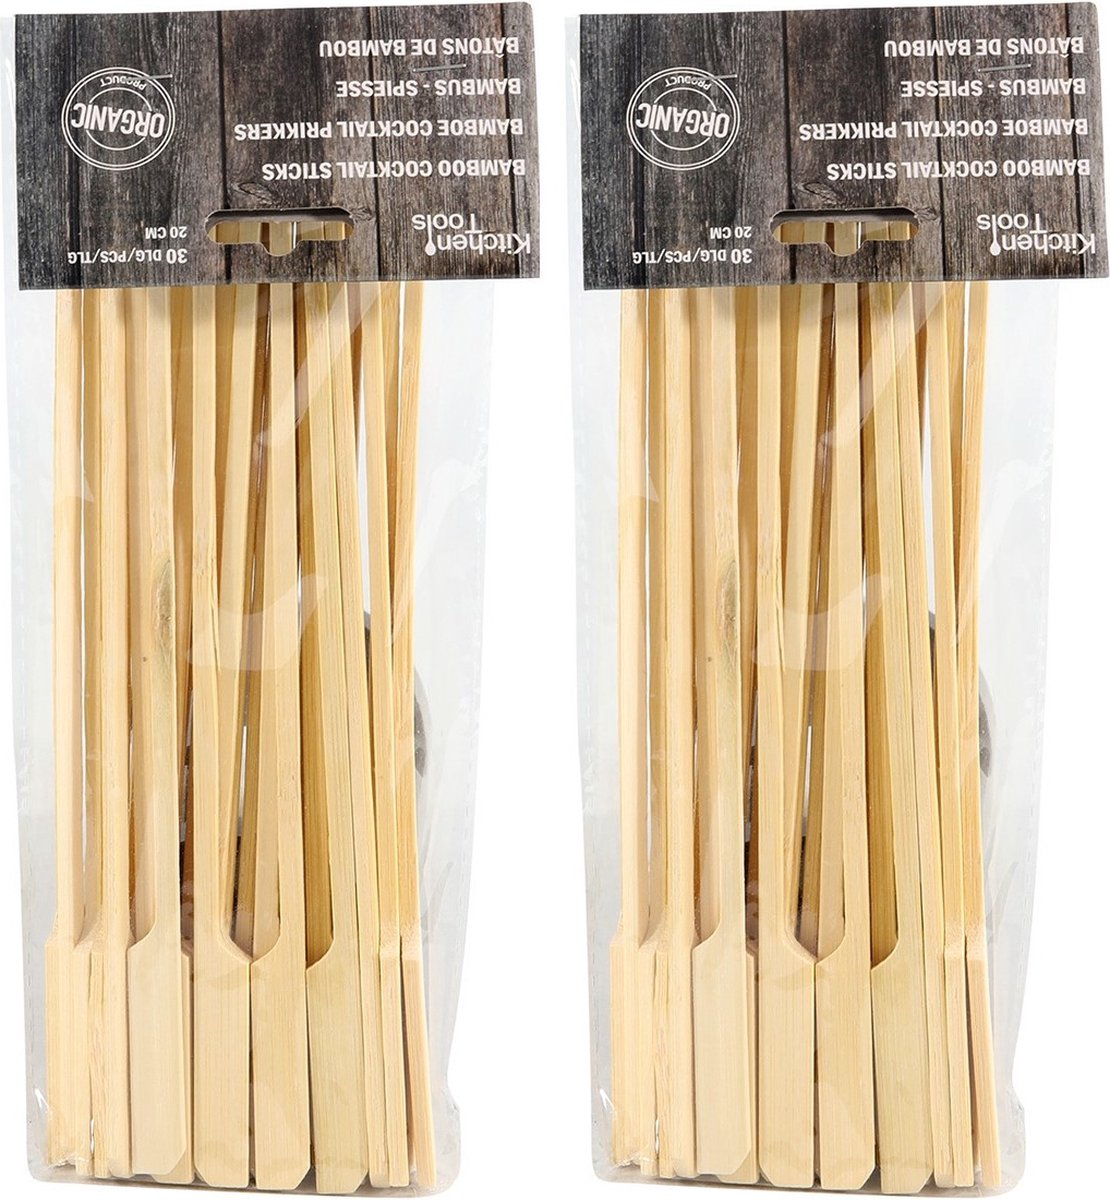 120x Bamboe houten sate prikkers/spiezen 20 cm - Vleespennen - BBQ spiezen - Cocktail prikkers